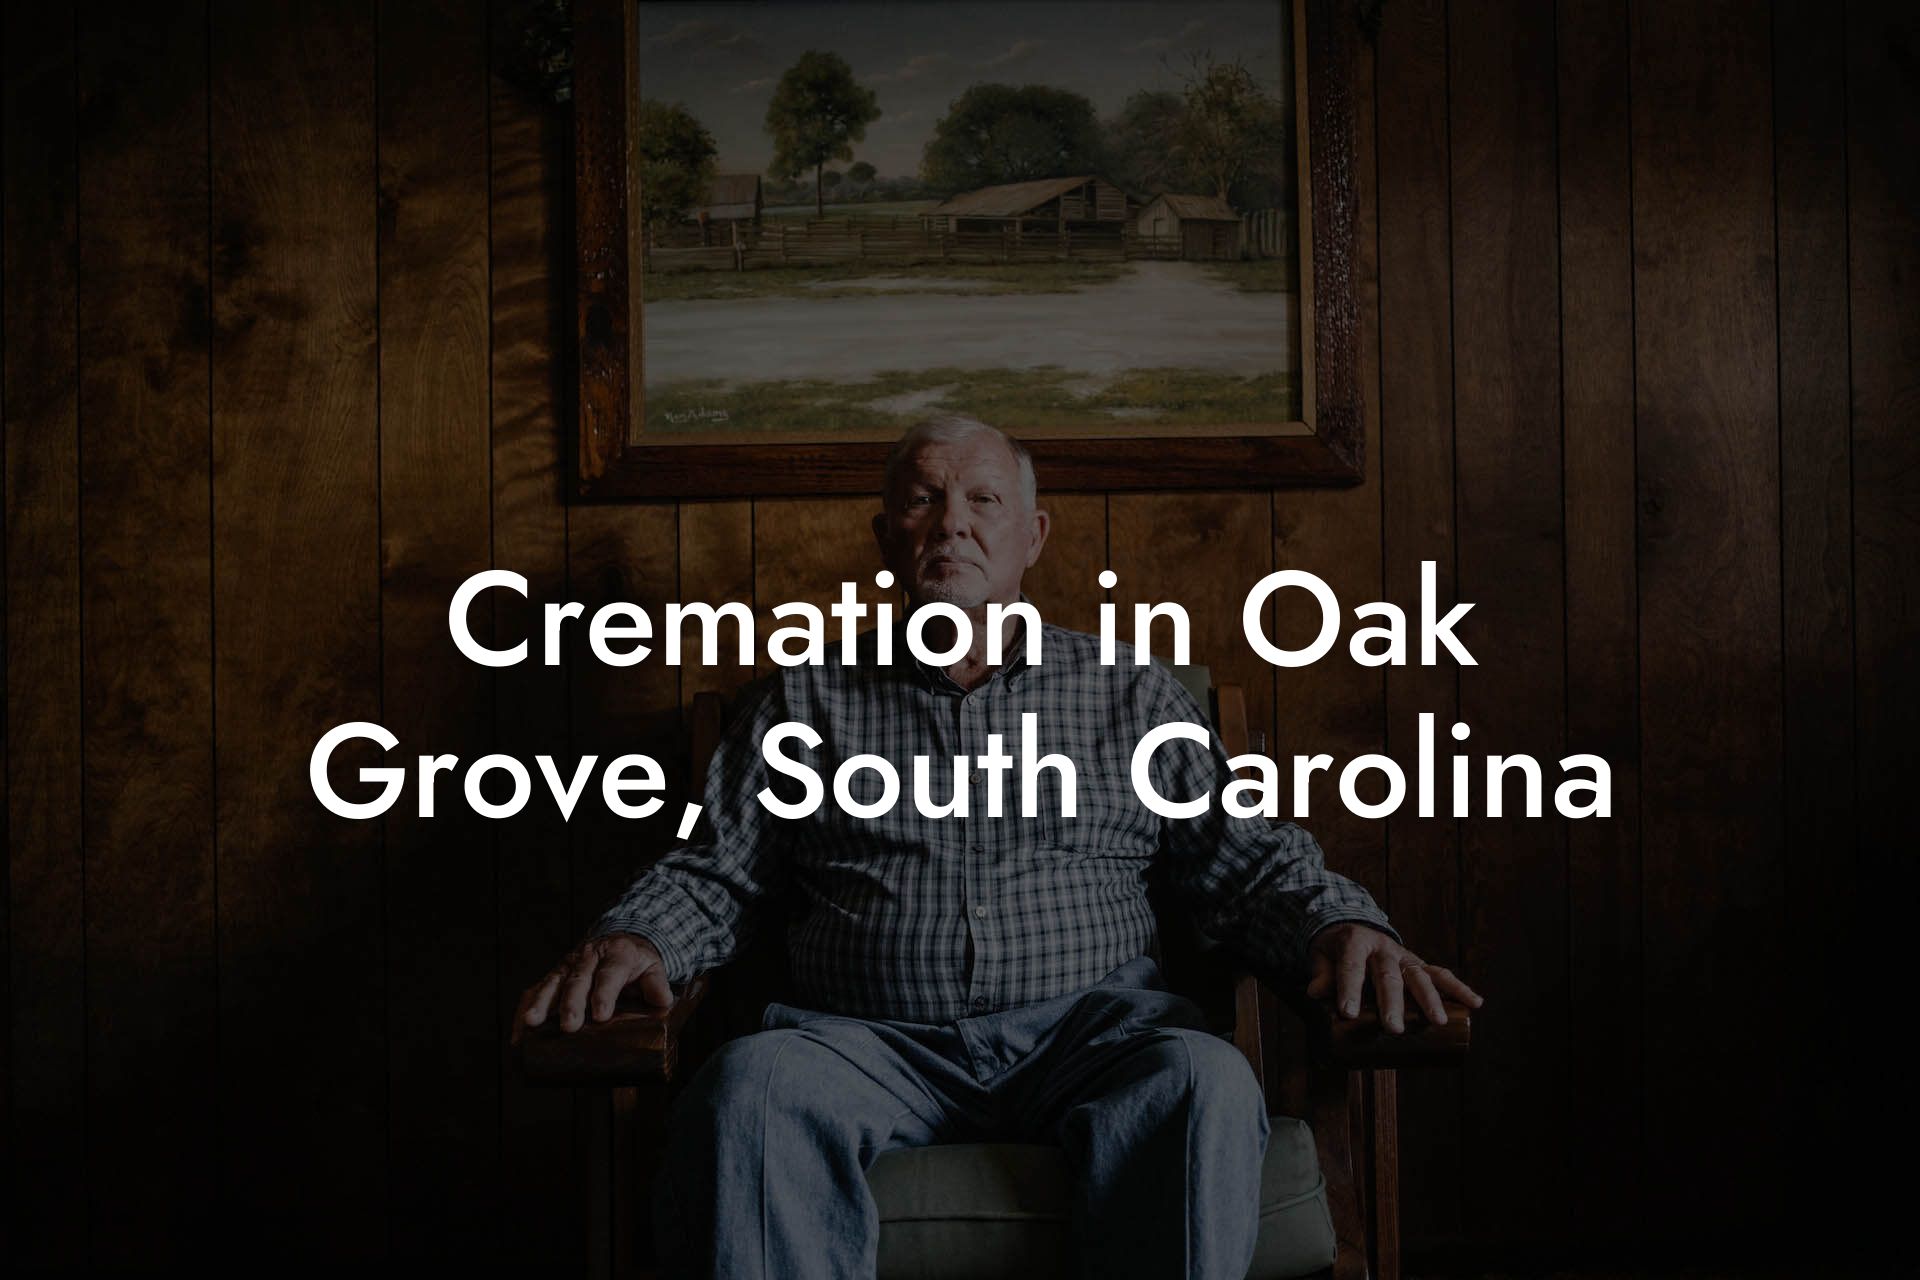 Cremation in Oak Grove, South Carolina